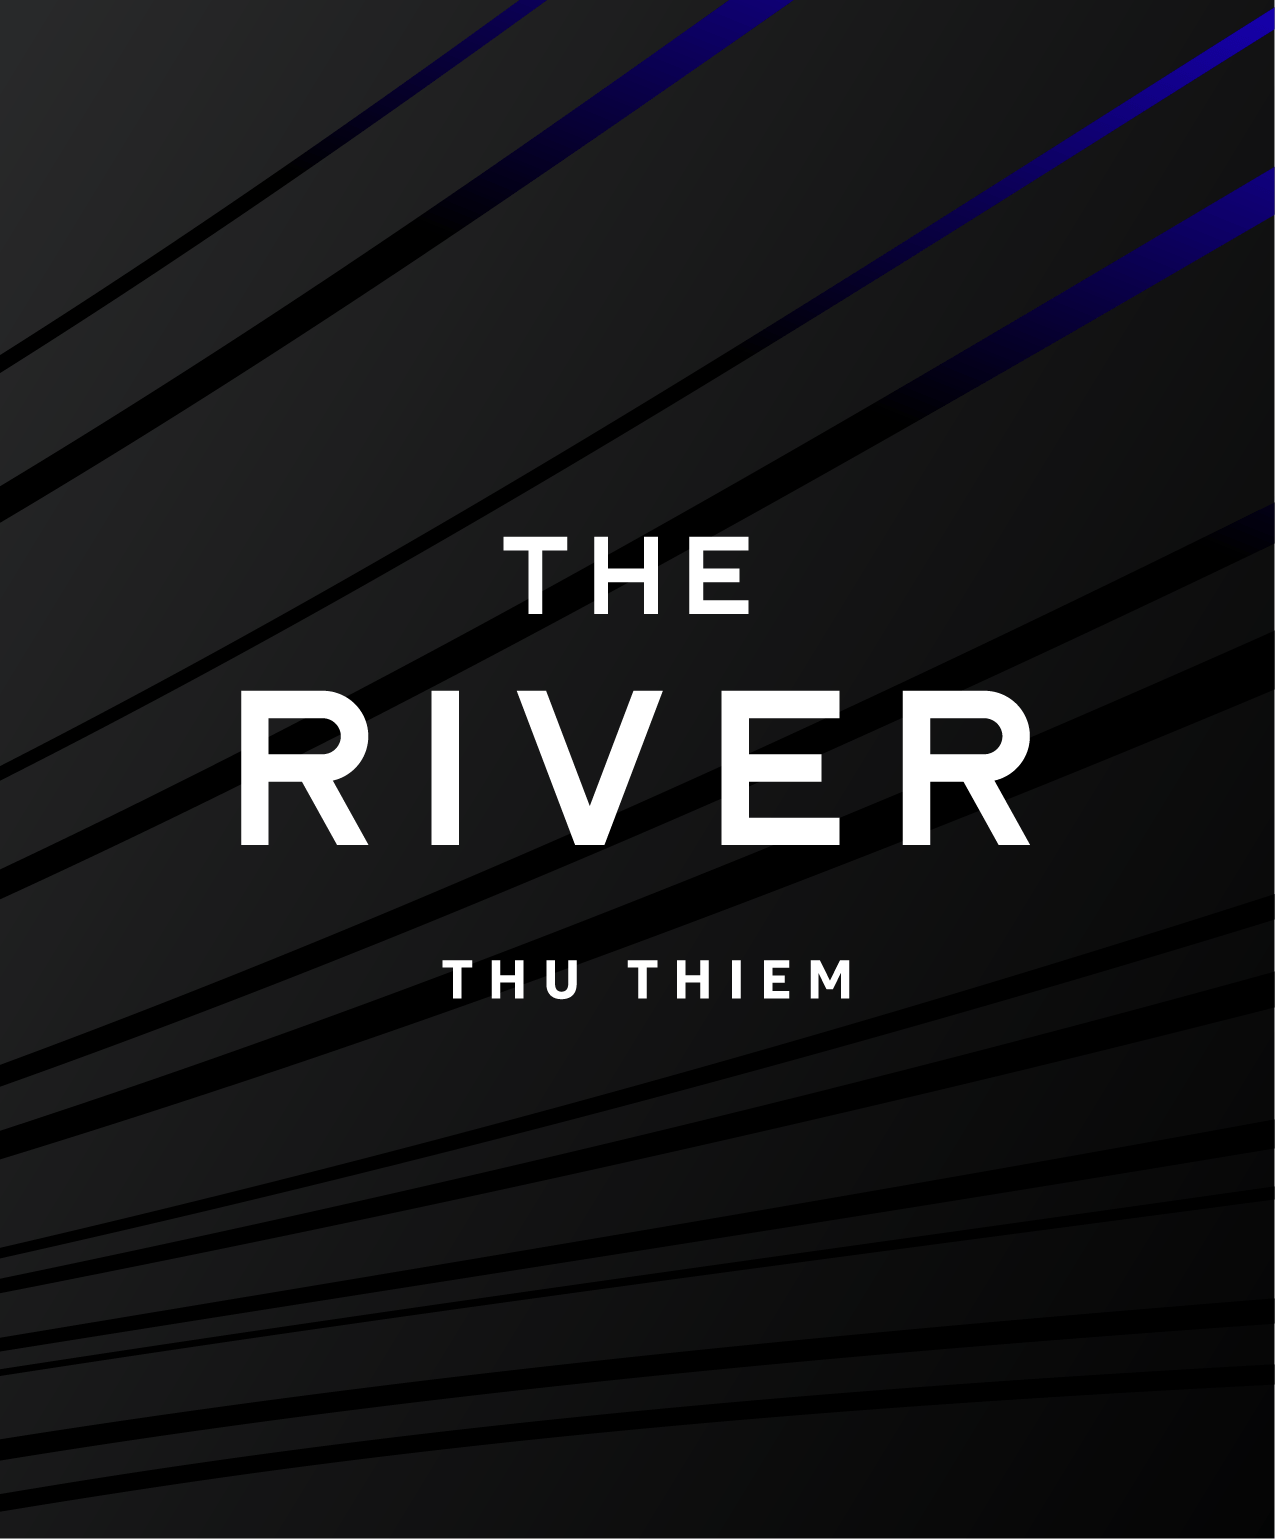 The River Thu Thiem 项目